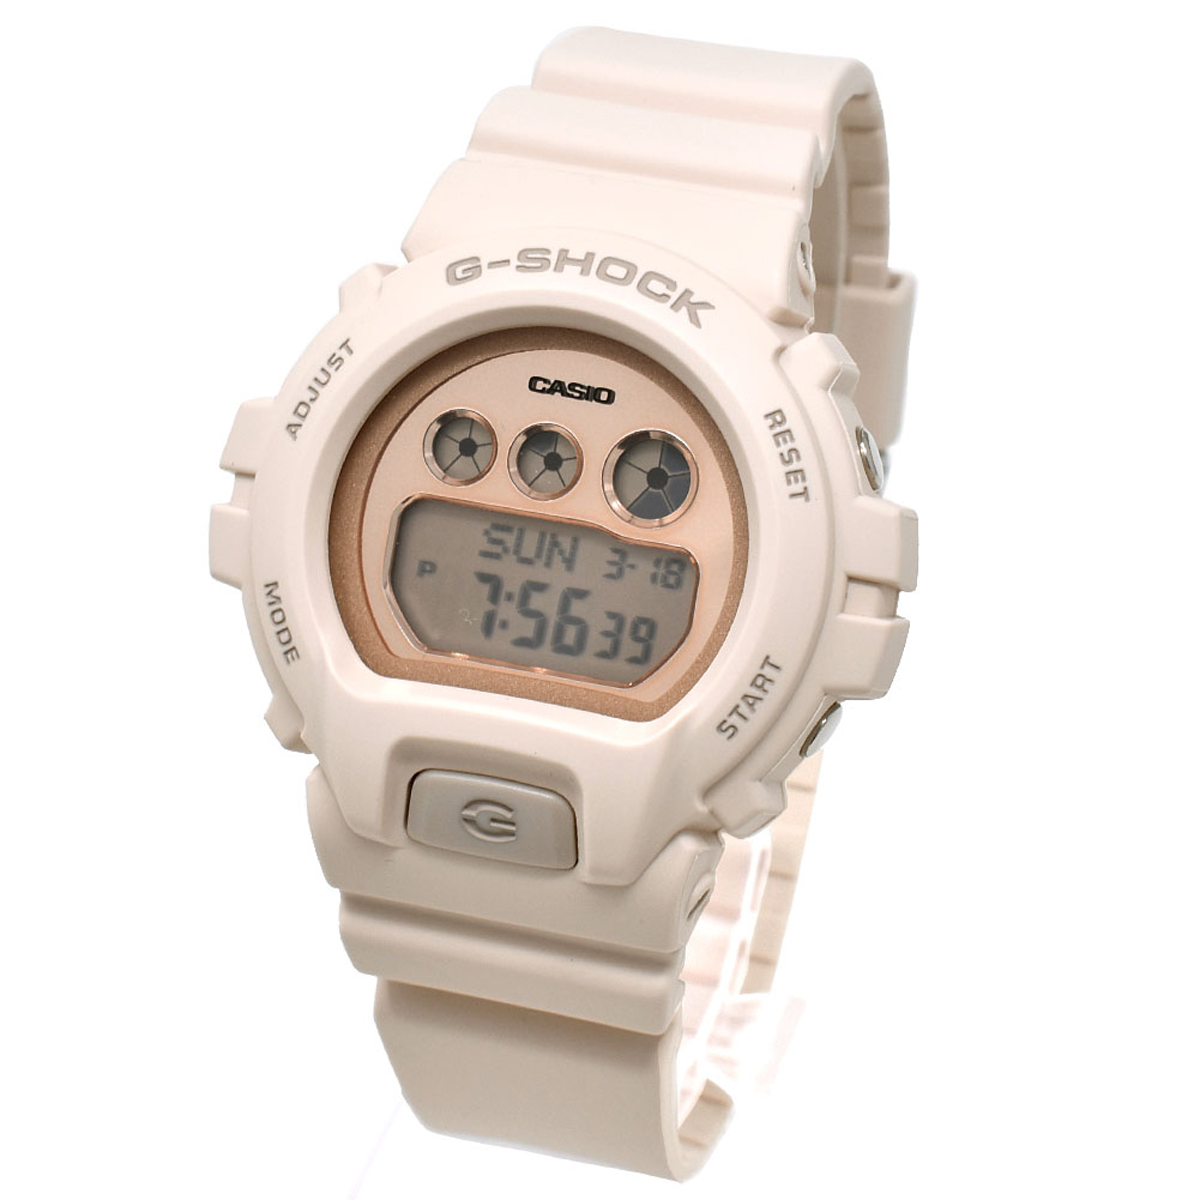 カシオ CASIO 腕時計 G-SHOCK Gショック GMD-S6900MC-4ER デジタル時計 メンズ レディース 男女兼用 ウォッチ ベージュ 海外正規品腕時計